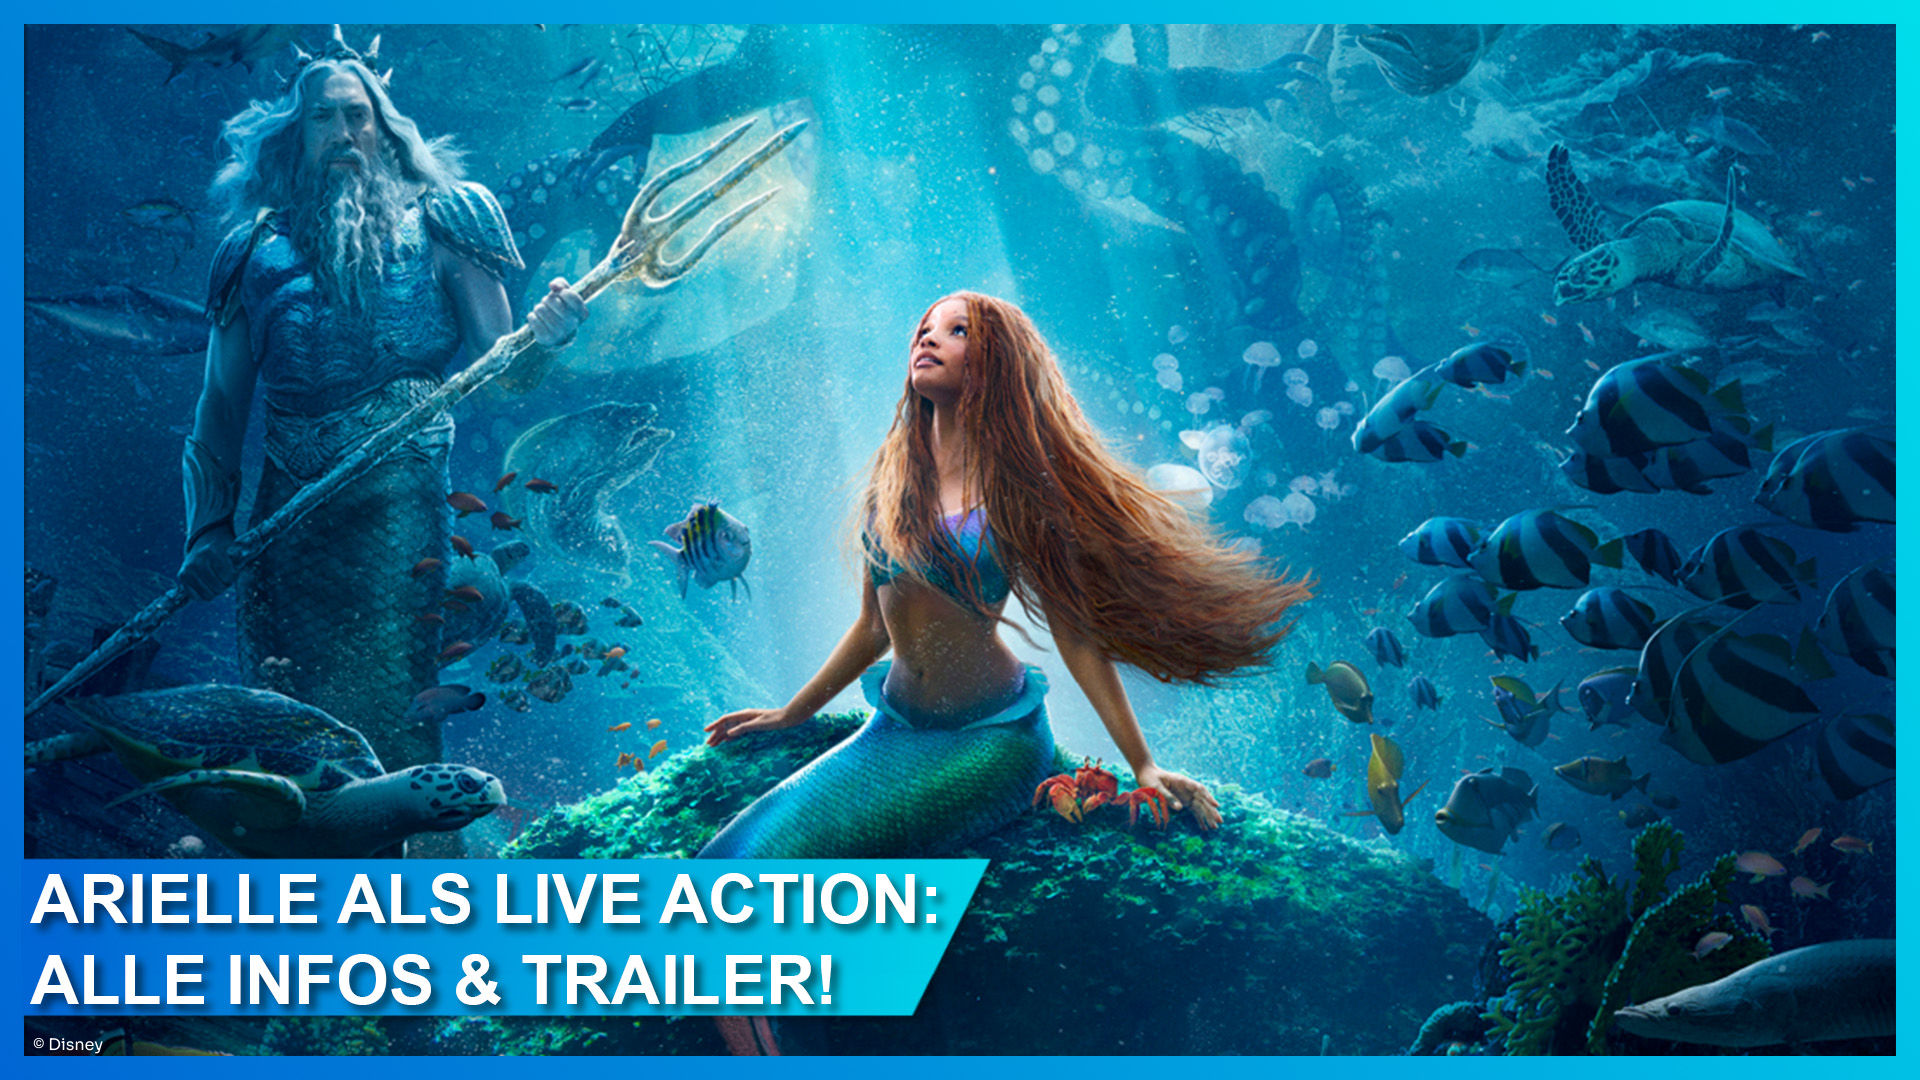 Arielle die Meerjungfrau als Live Action Film: der erste Trailer mit Song zum Musical mit Halle Bailey